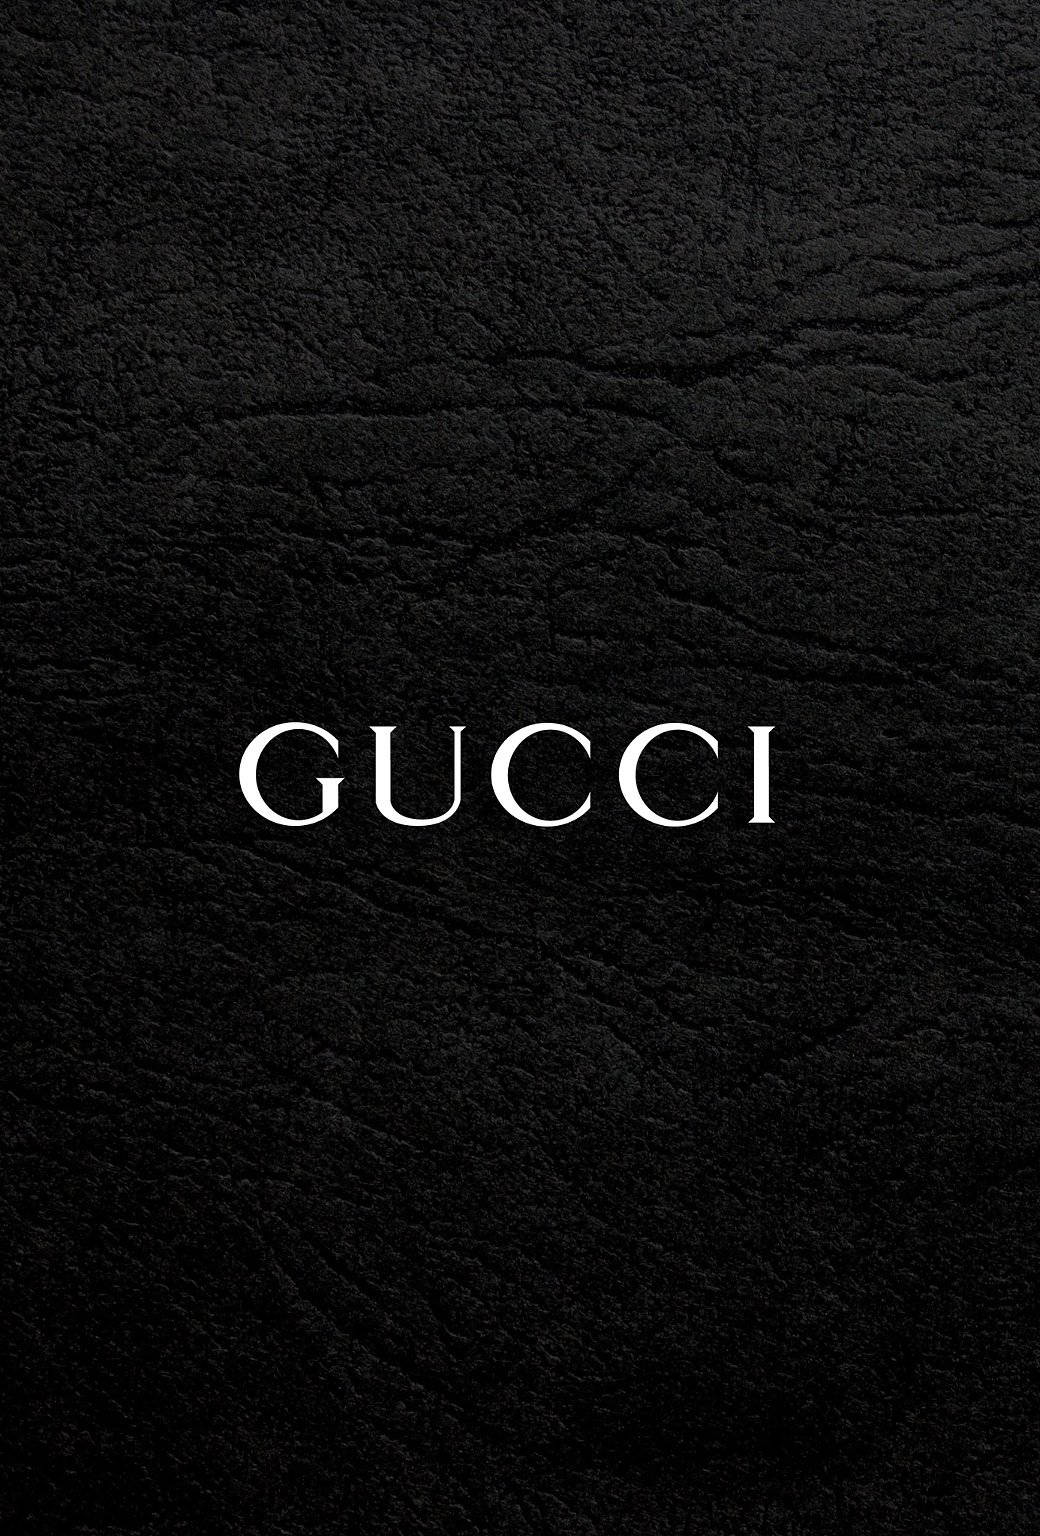 Free Gucci HD Wallpaper